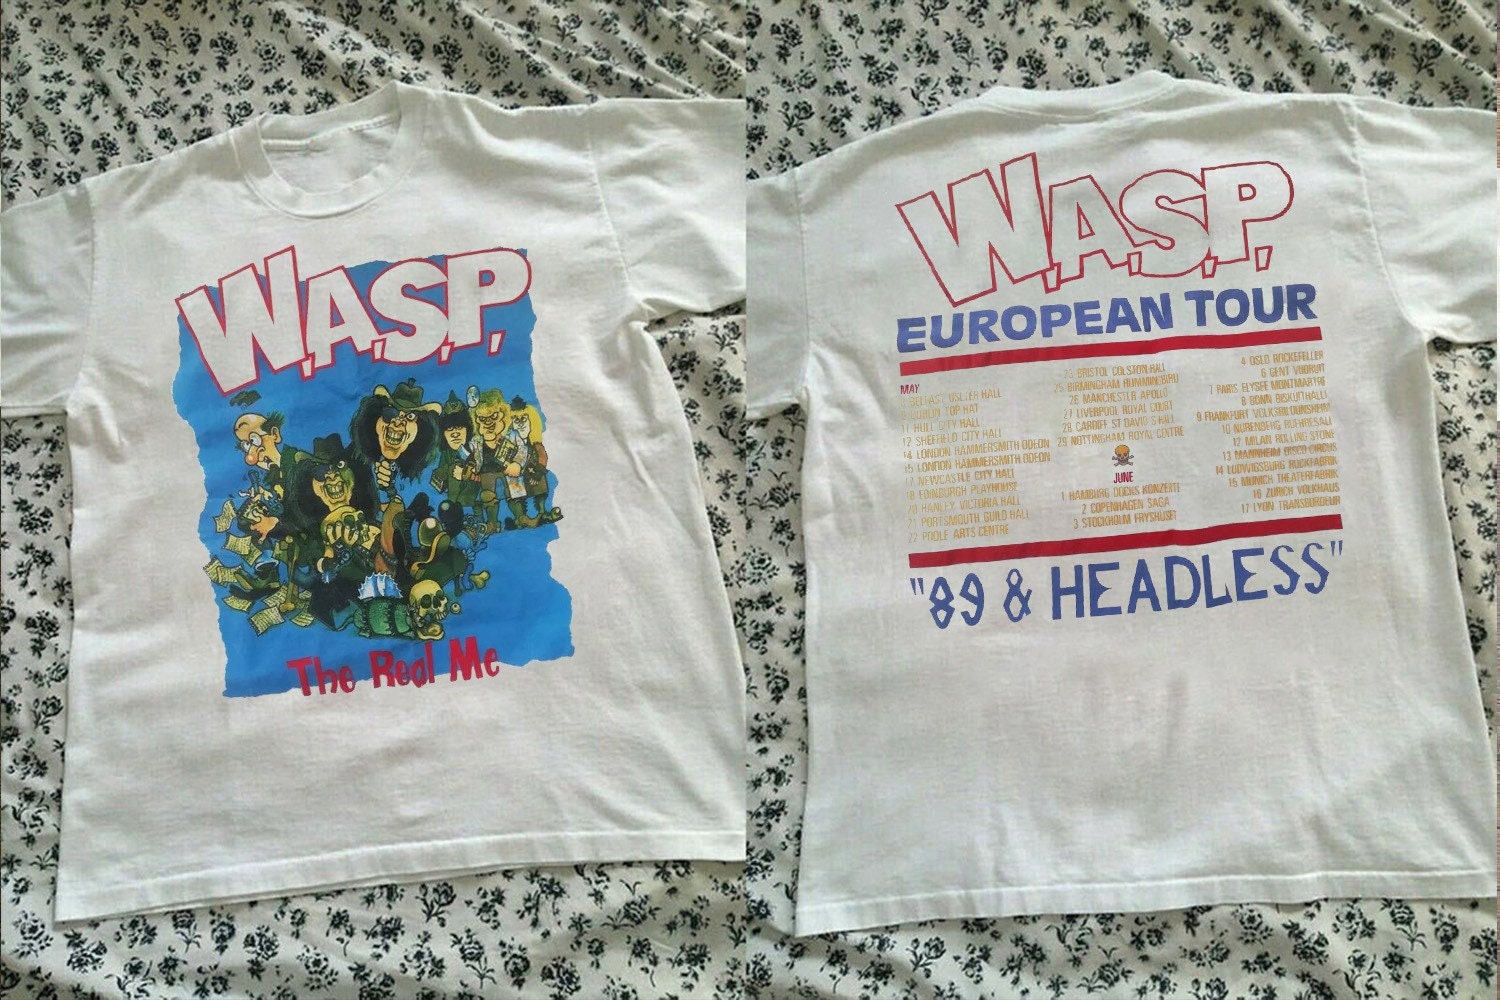 W.A.S.P the Real Me European Tour 89 N Headless T-shirt